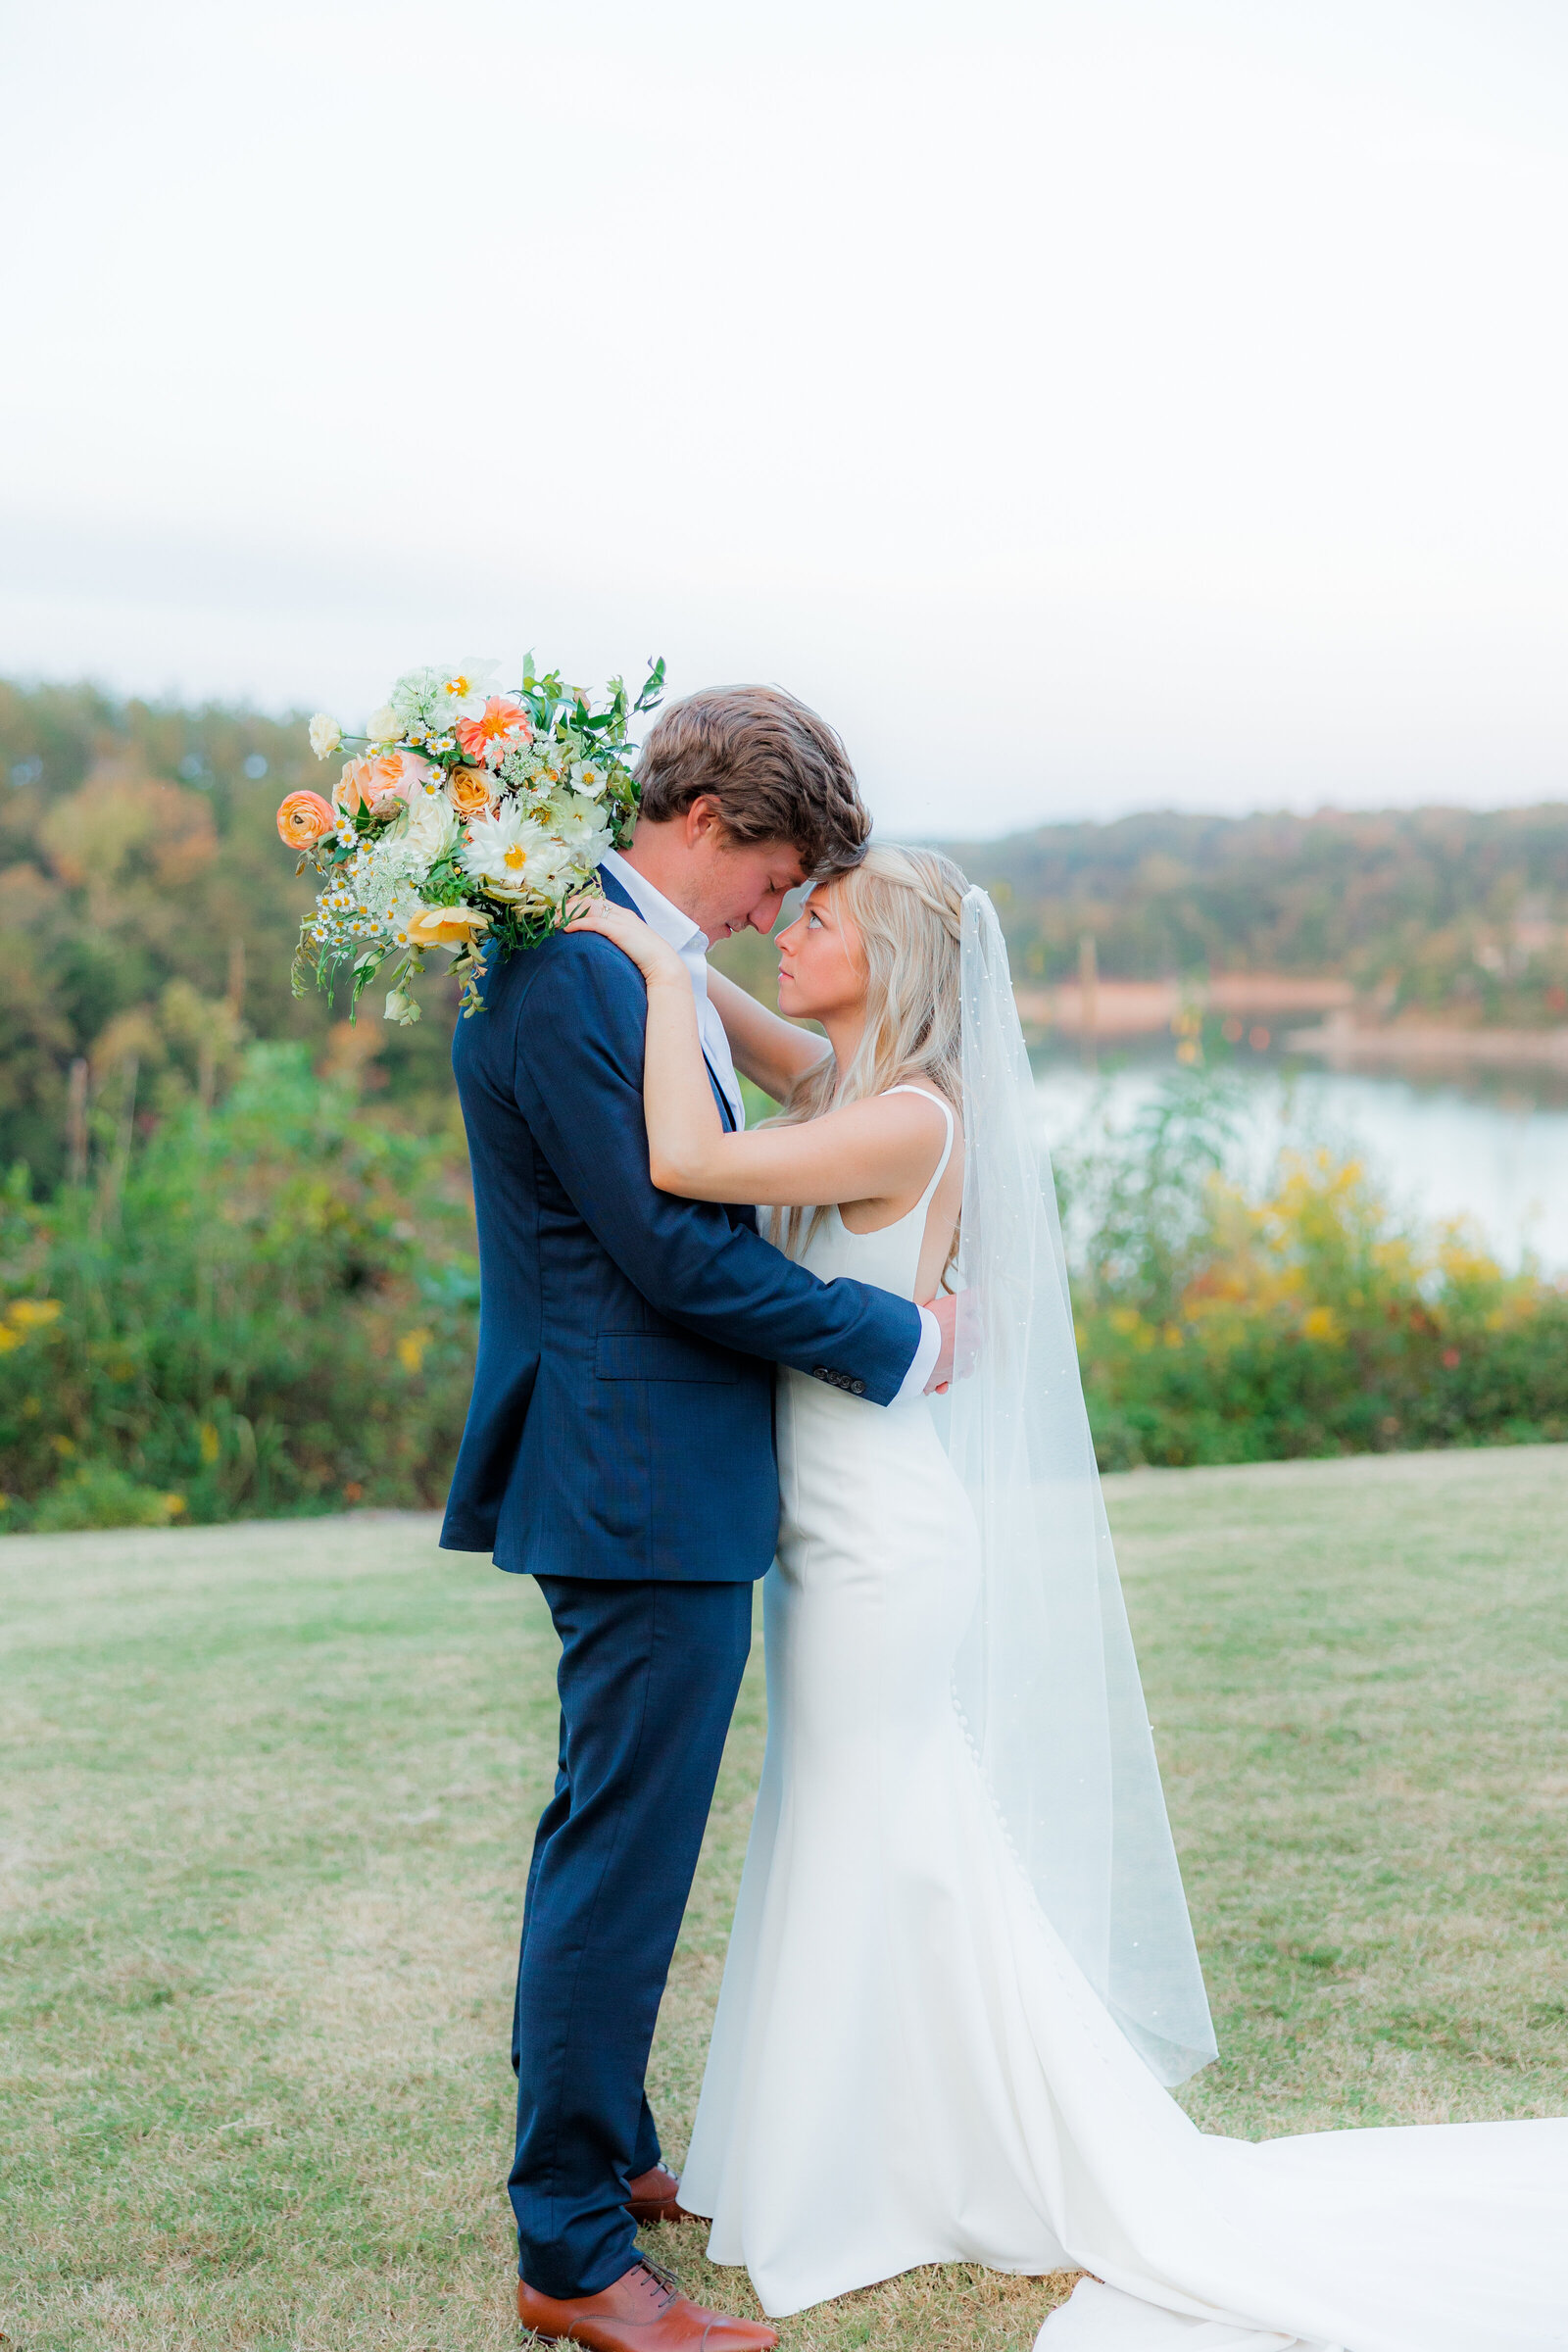 Lauren & Sam Parkers Wedding Day- Bride & Groom Portraits 011